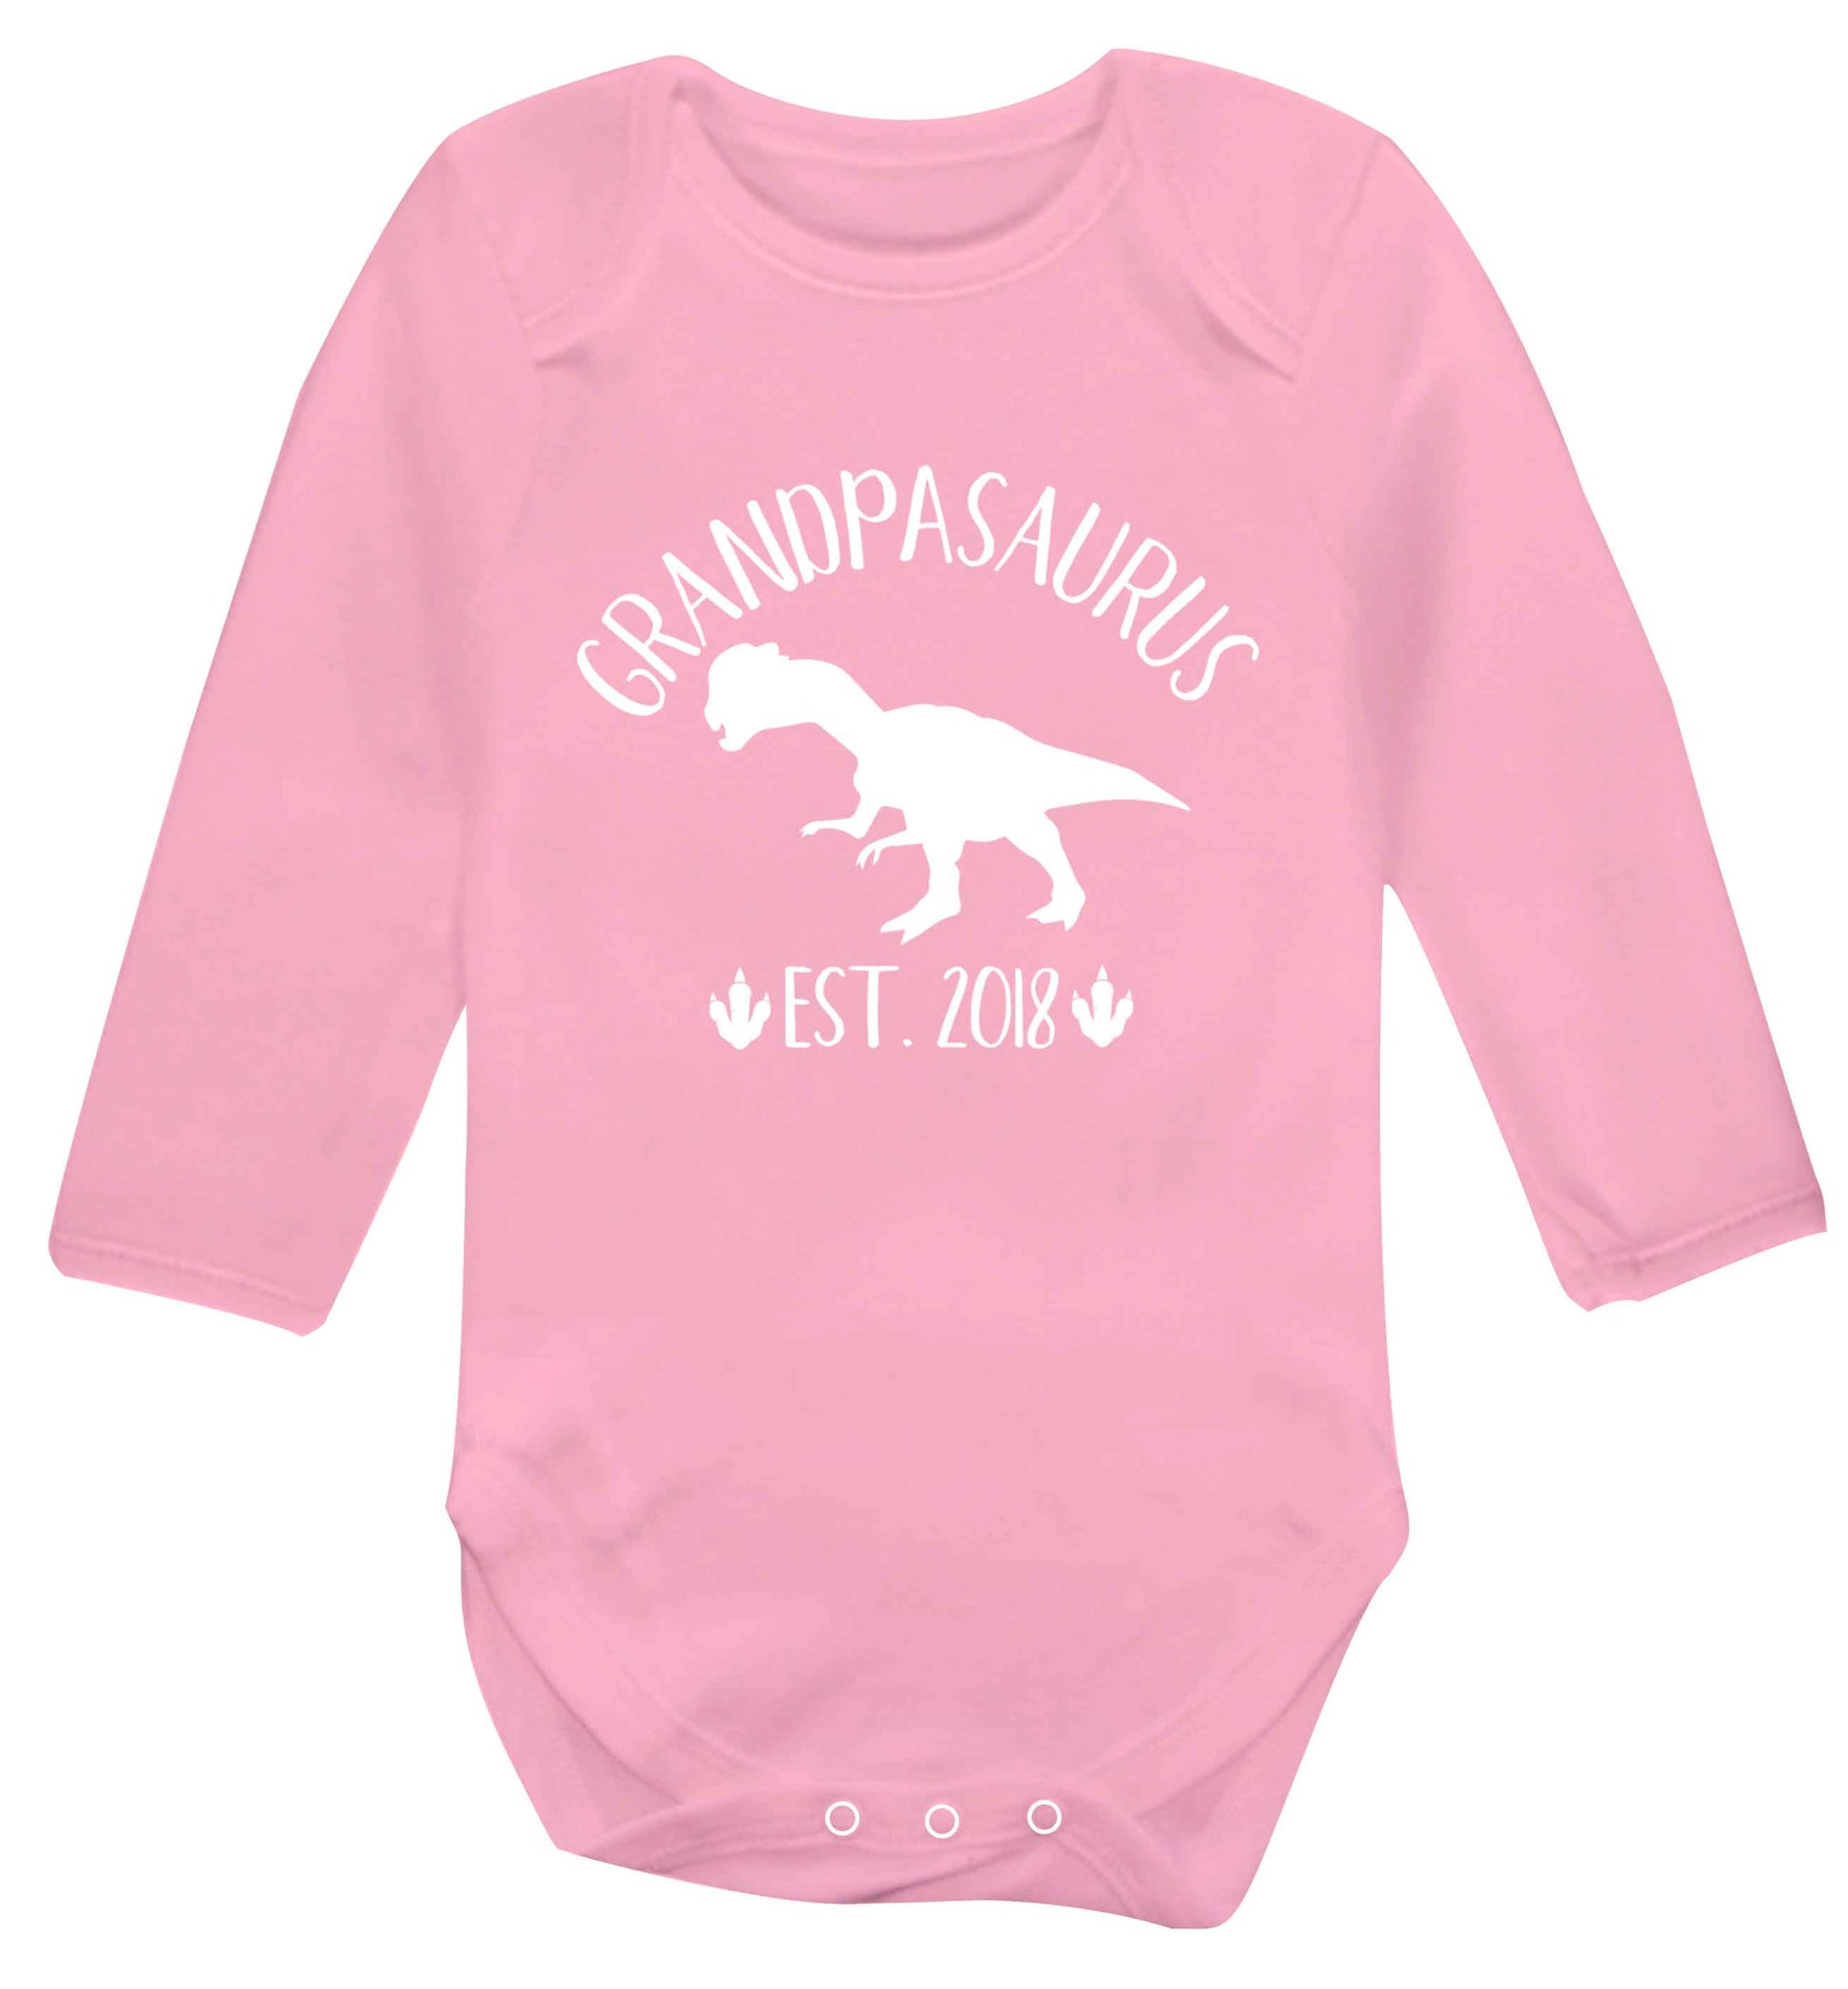 Personalised grandpasaurus since (custom date) Baby Vest long sleeved pale pink 6-12 months